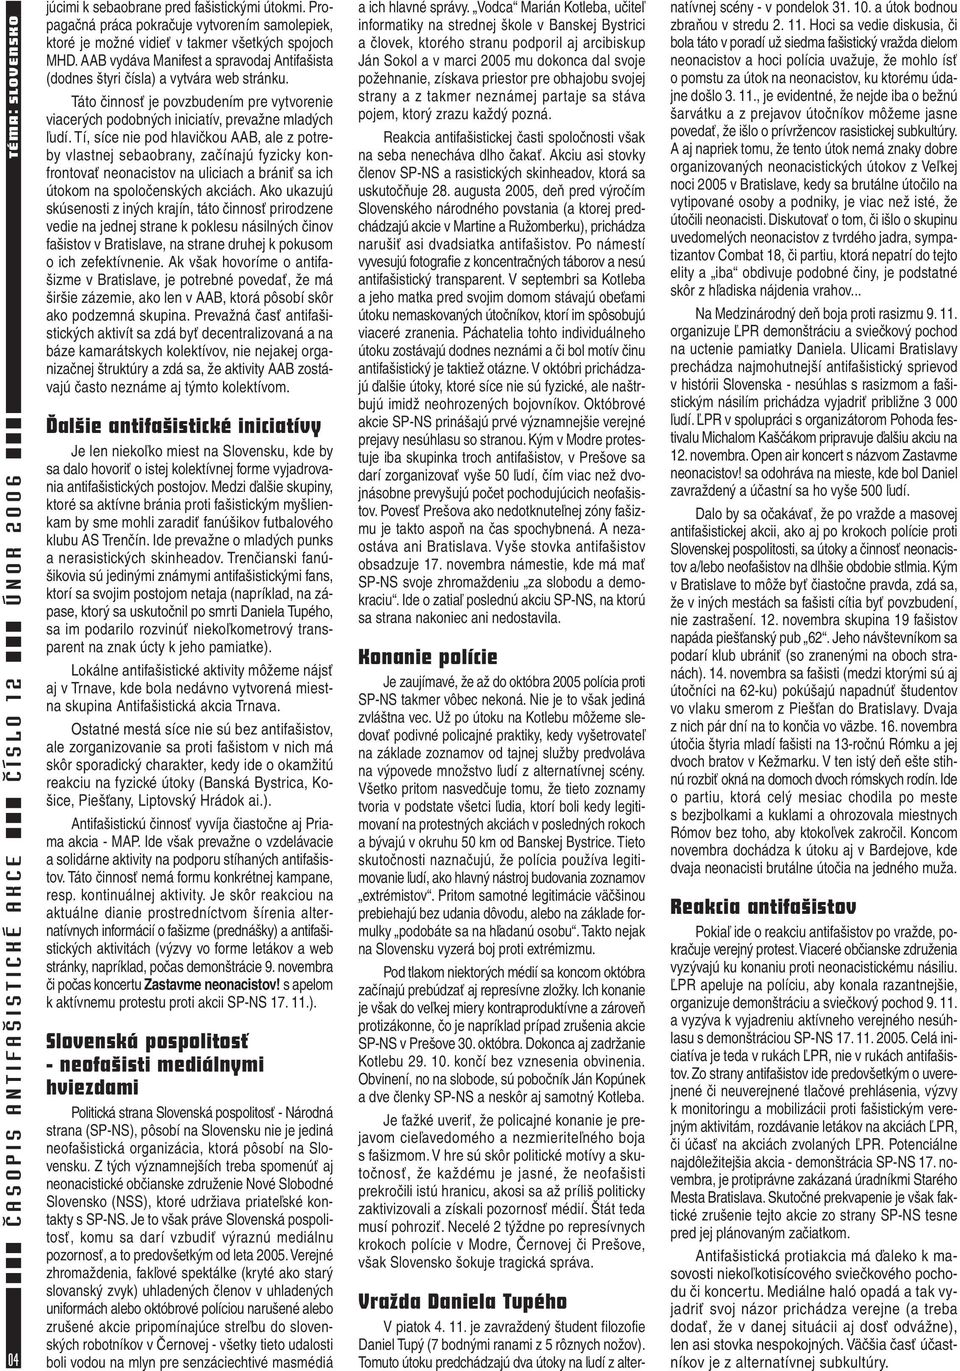 ČASOPIS ANTIFAŠISTICKÉ AKCE ČÍSLO 12 ÚNOR 2006 OBSAH + EDITORIAL +  PROHLÁŠENÍ + TIRÁŽ TIRÁŽ - PDF Free Download